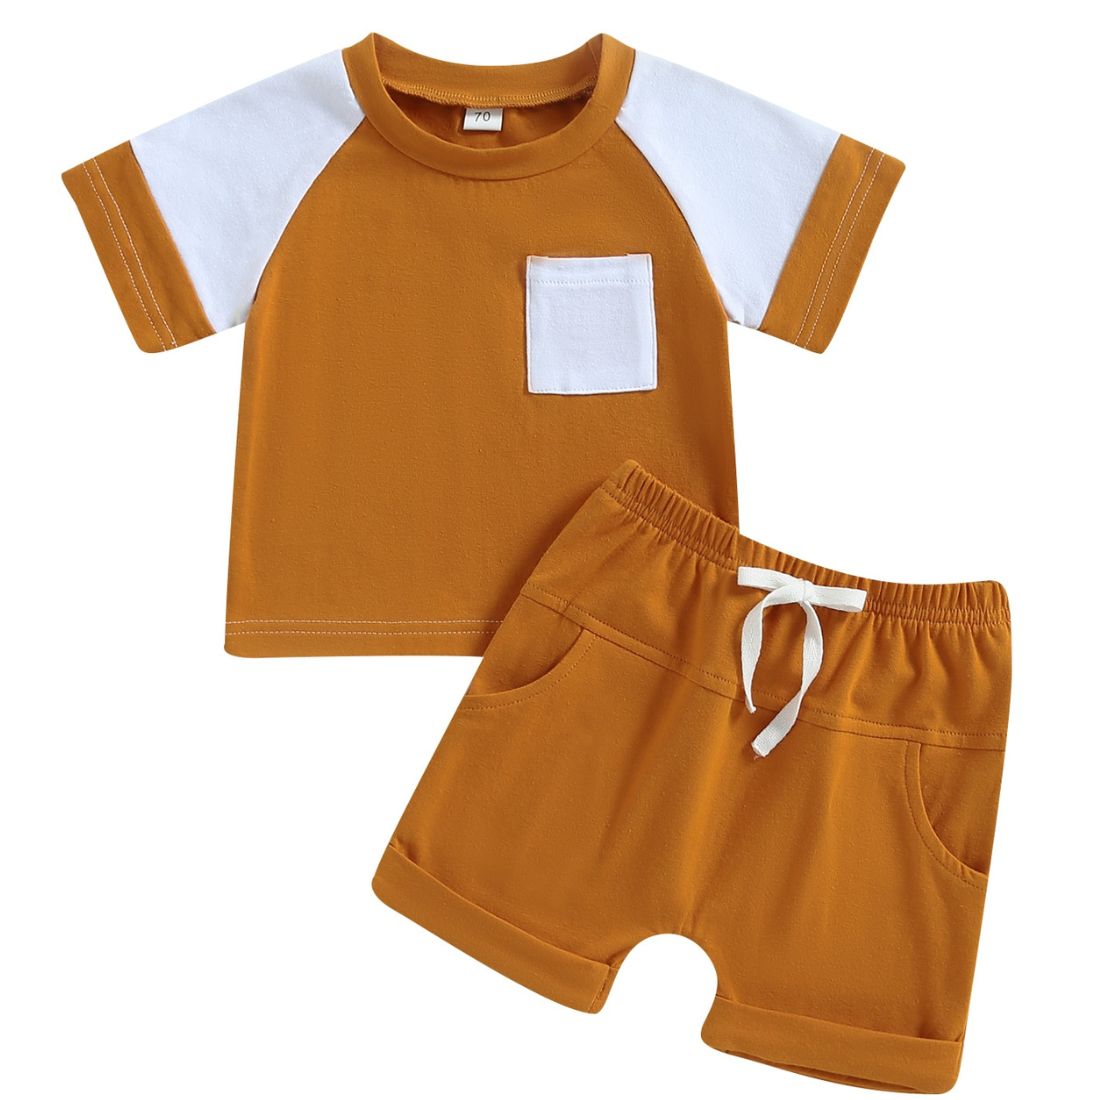 Two Tone Pocket Baby Clothing Set